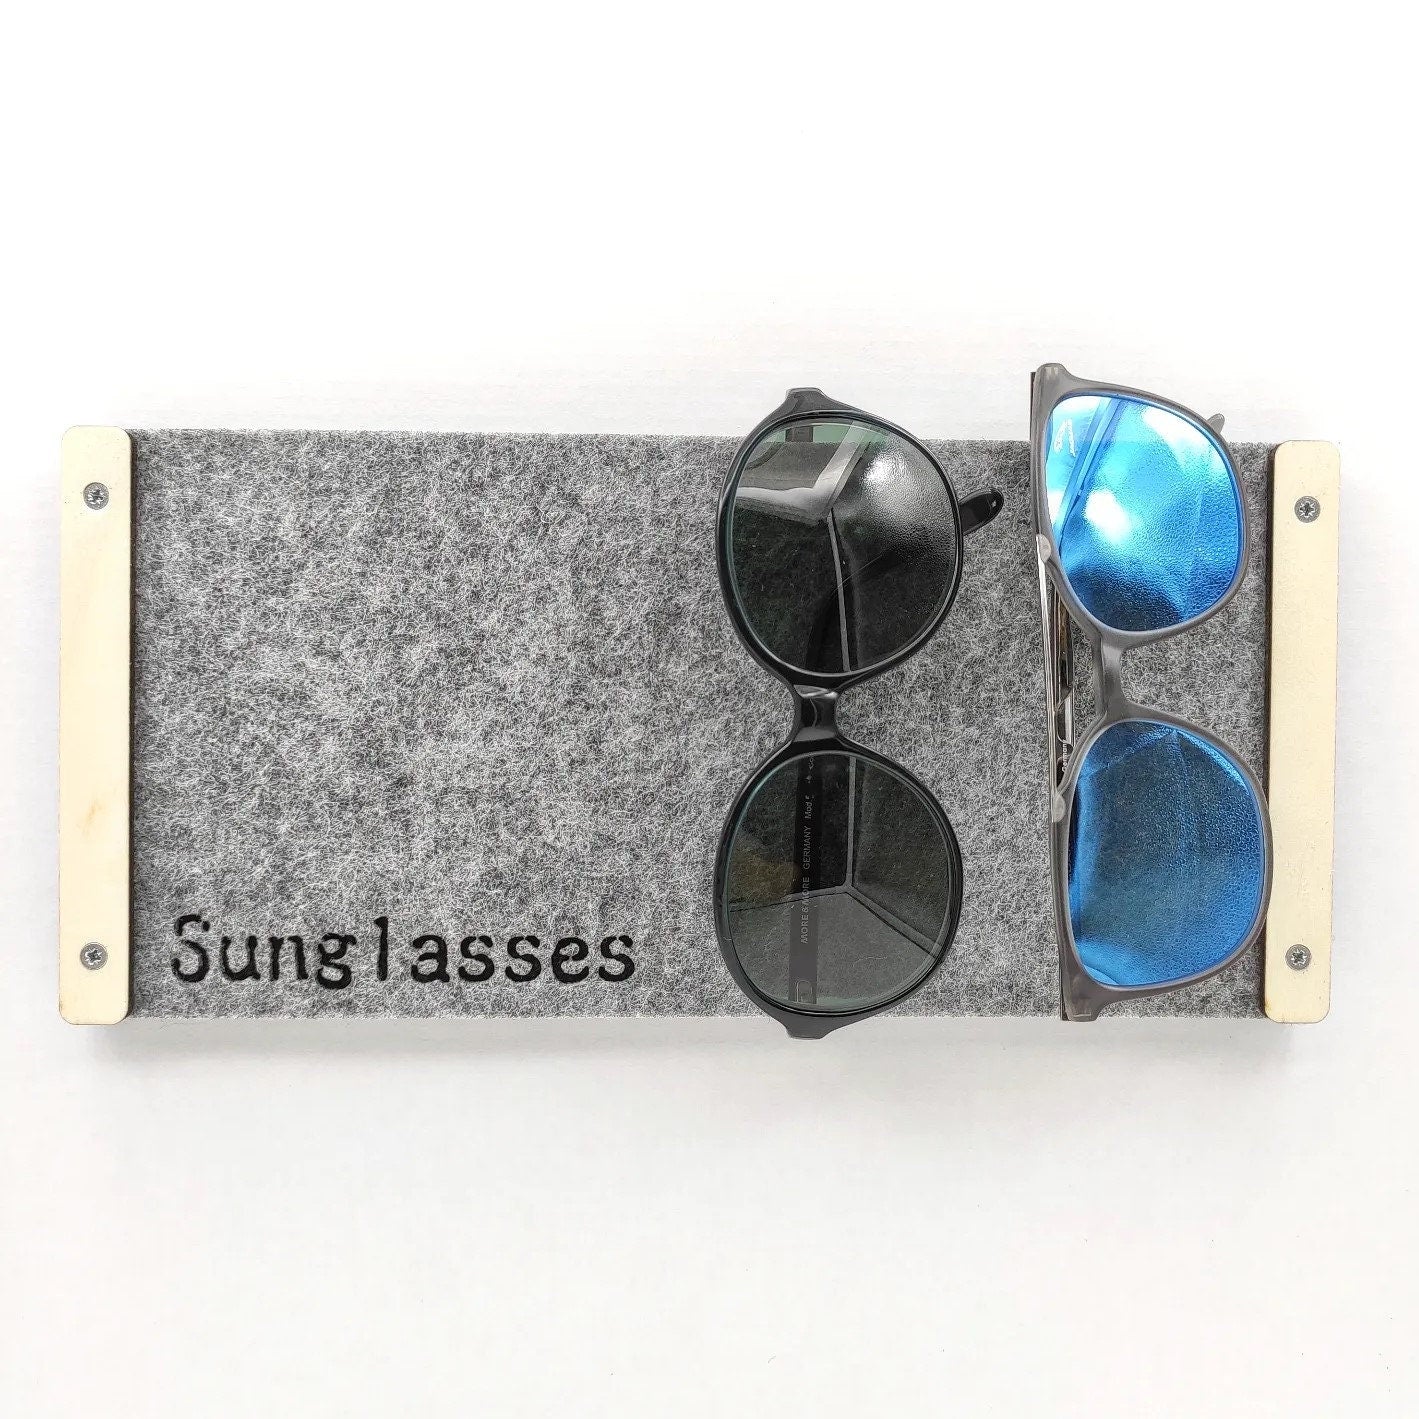 Sonnenbrille organisator, Sonnenbrille halter für die Wand